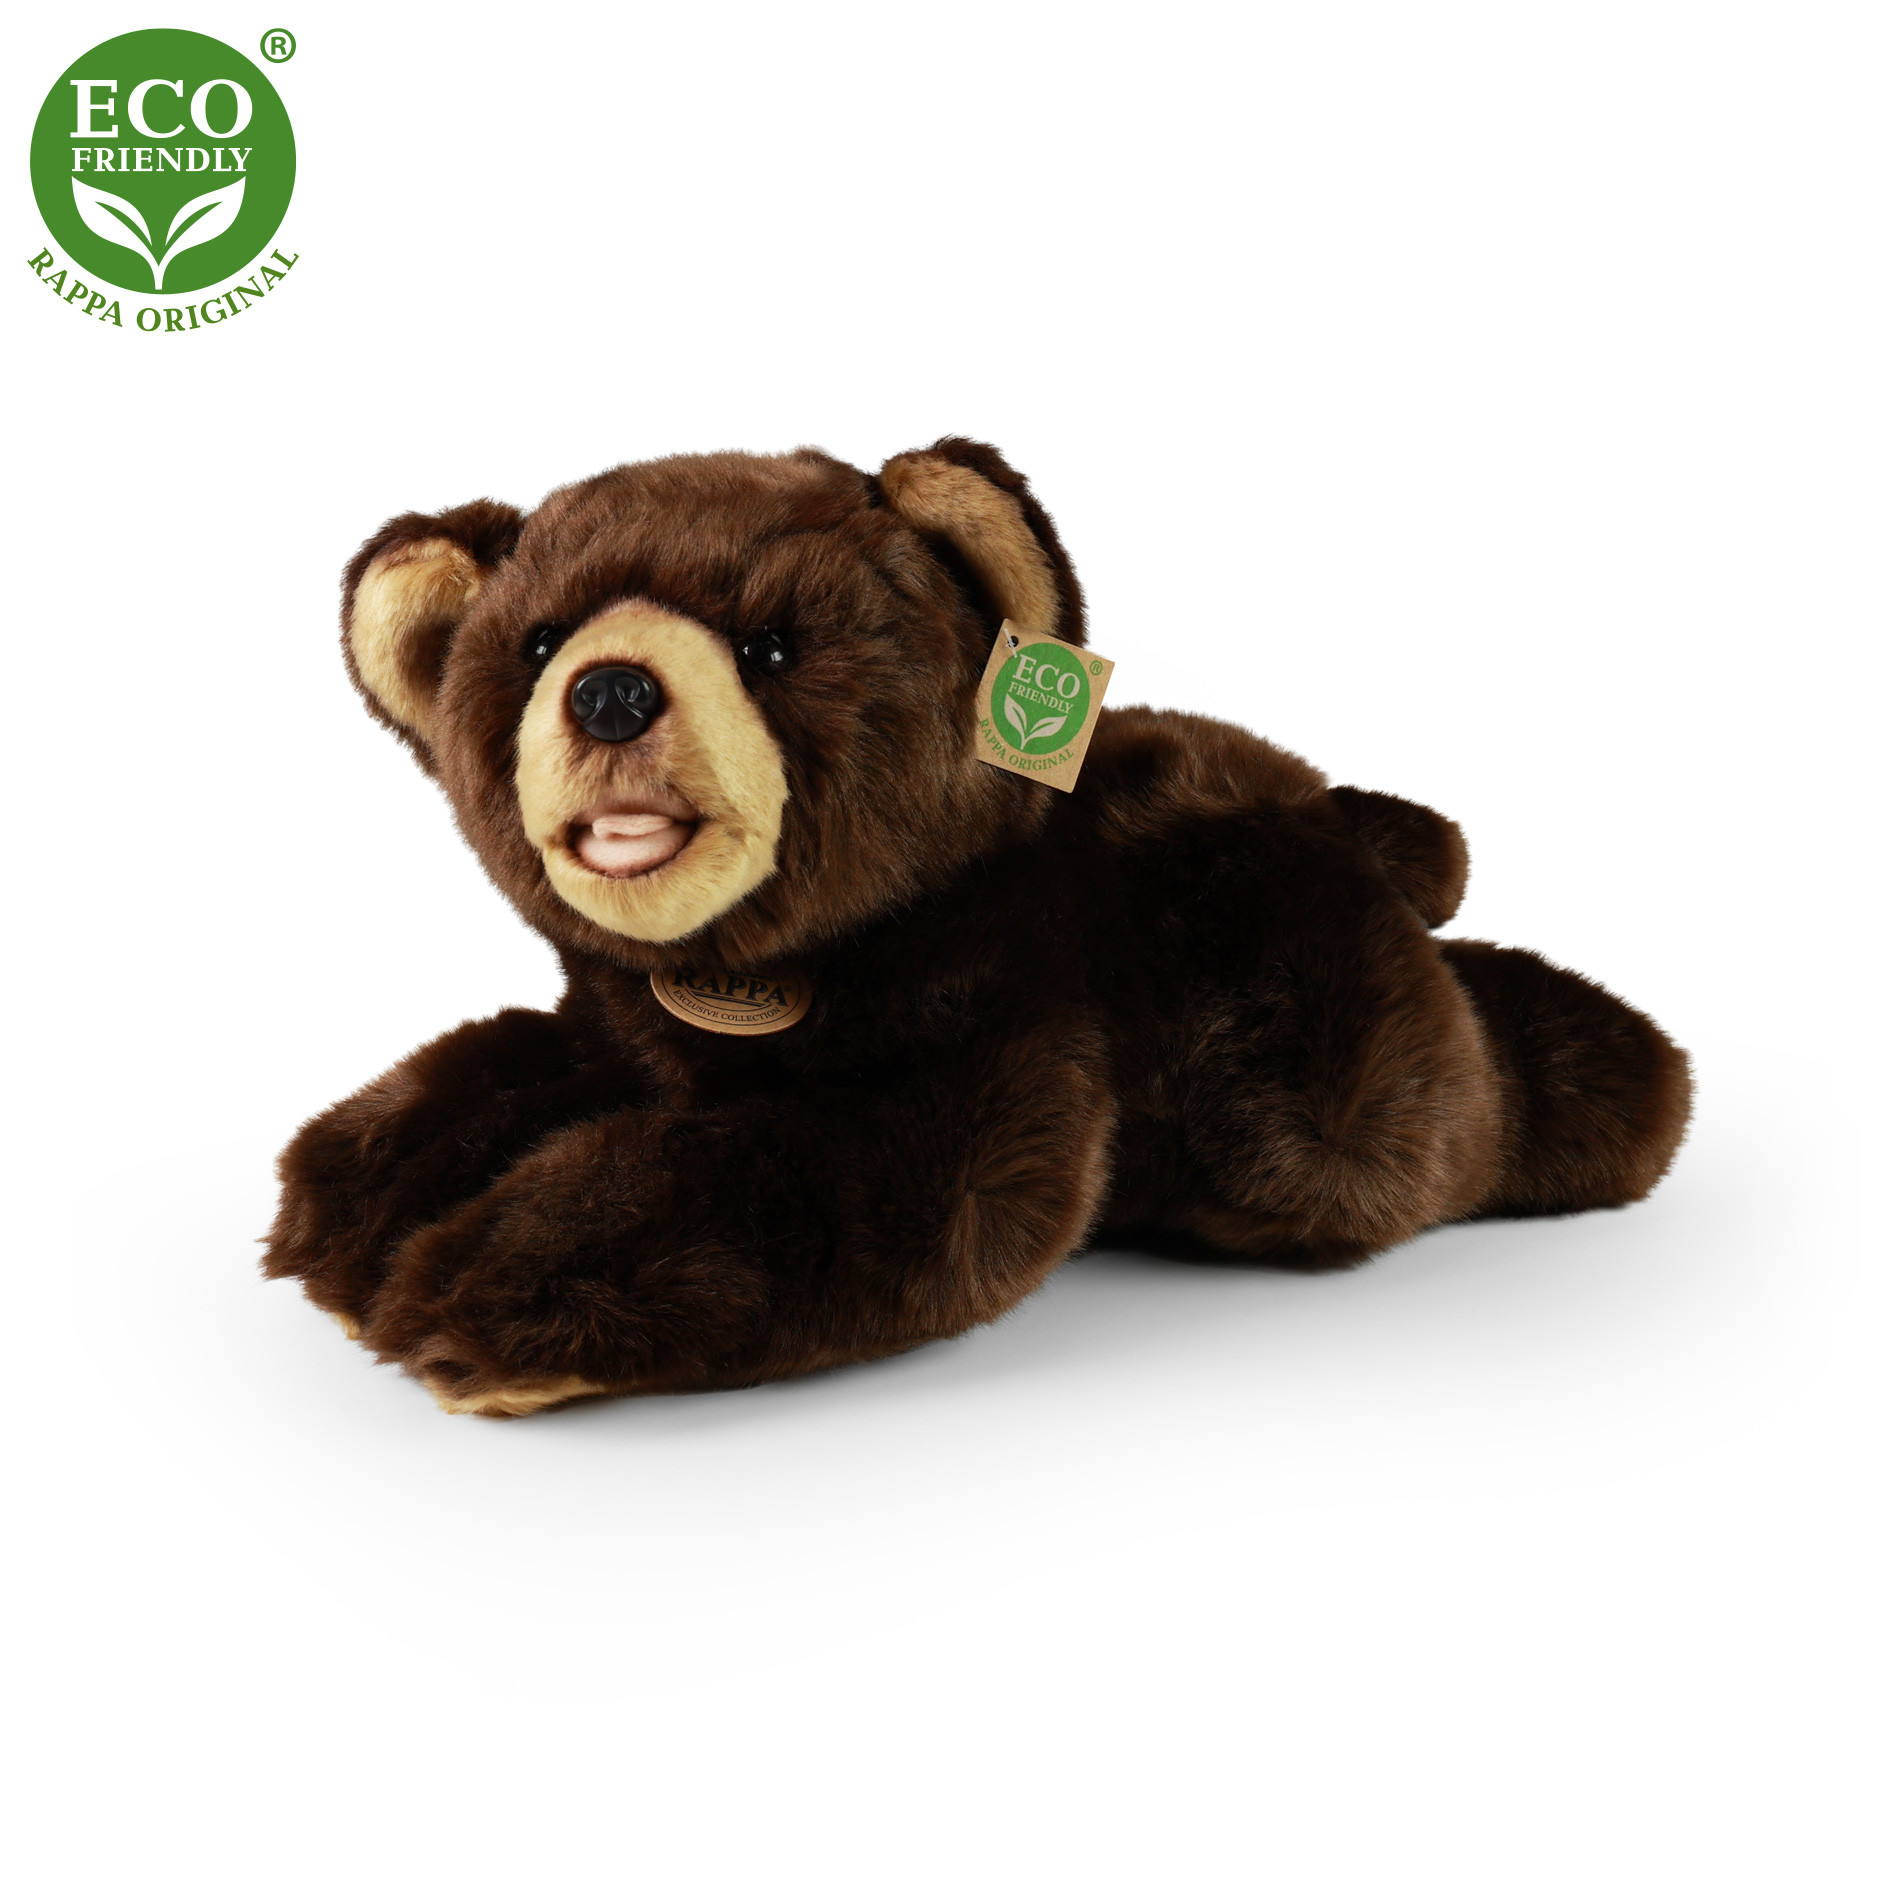 Plush teddy bear 32 cm ECO-FRIENDLY